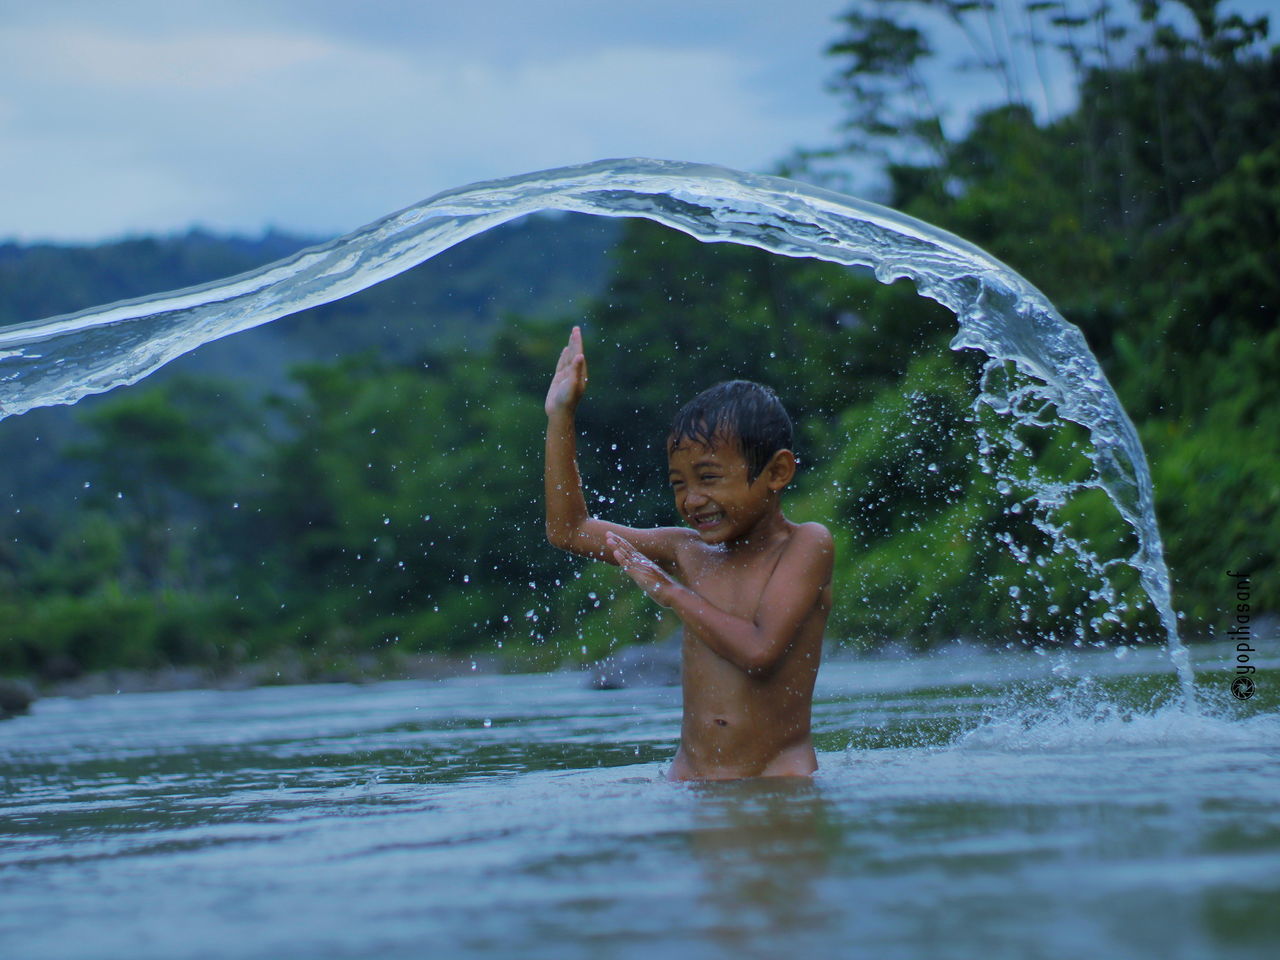 FULL LENGTH OF SHIRTLESS BOY SPLASHING WATER IN WATERFALL